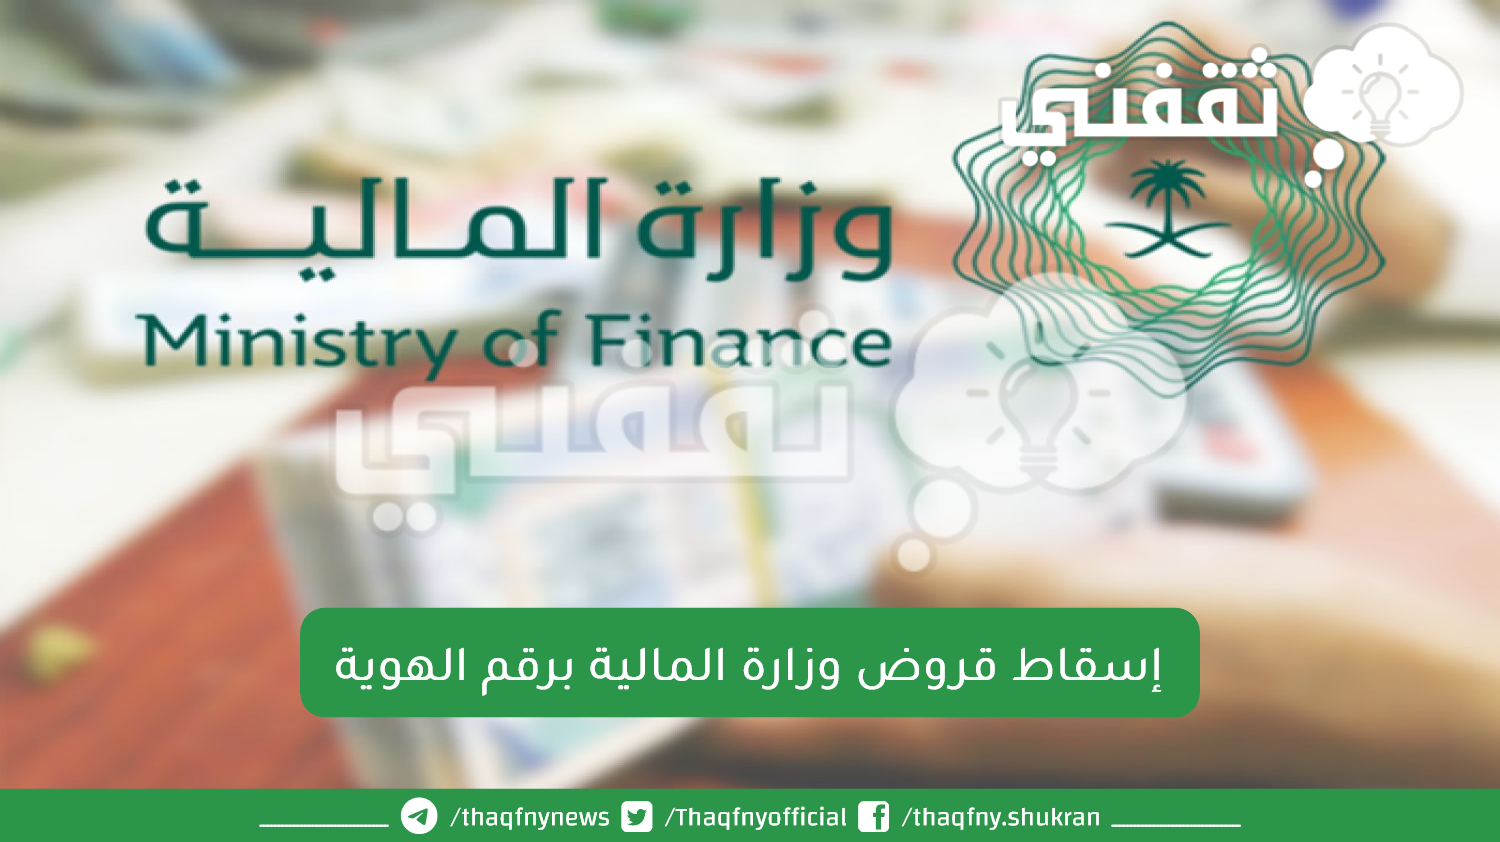 إسقاط قروض وزارة المالية برقم الهوية - مدونة التقنية العربية